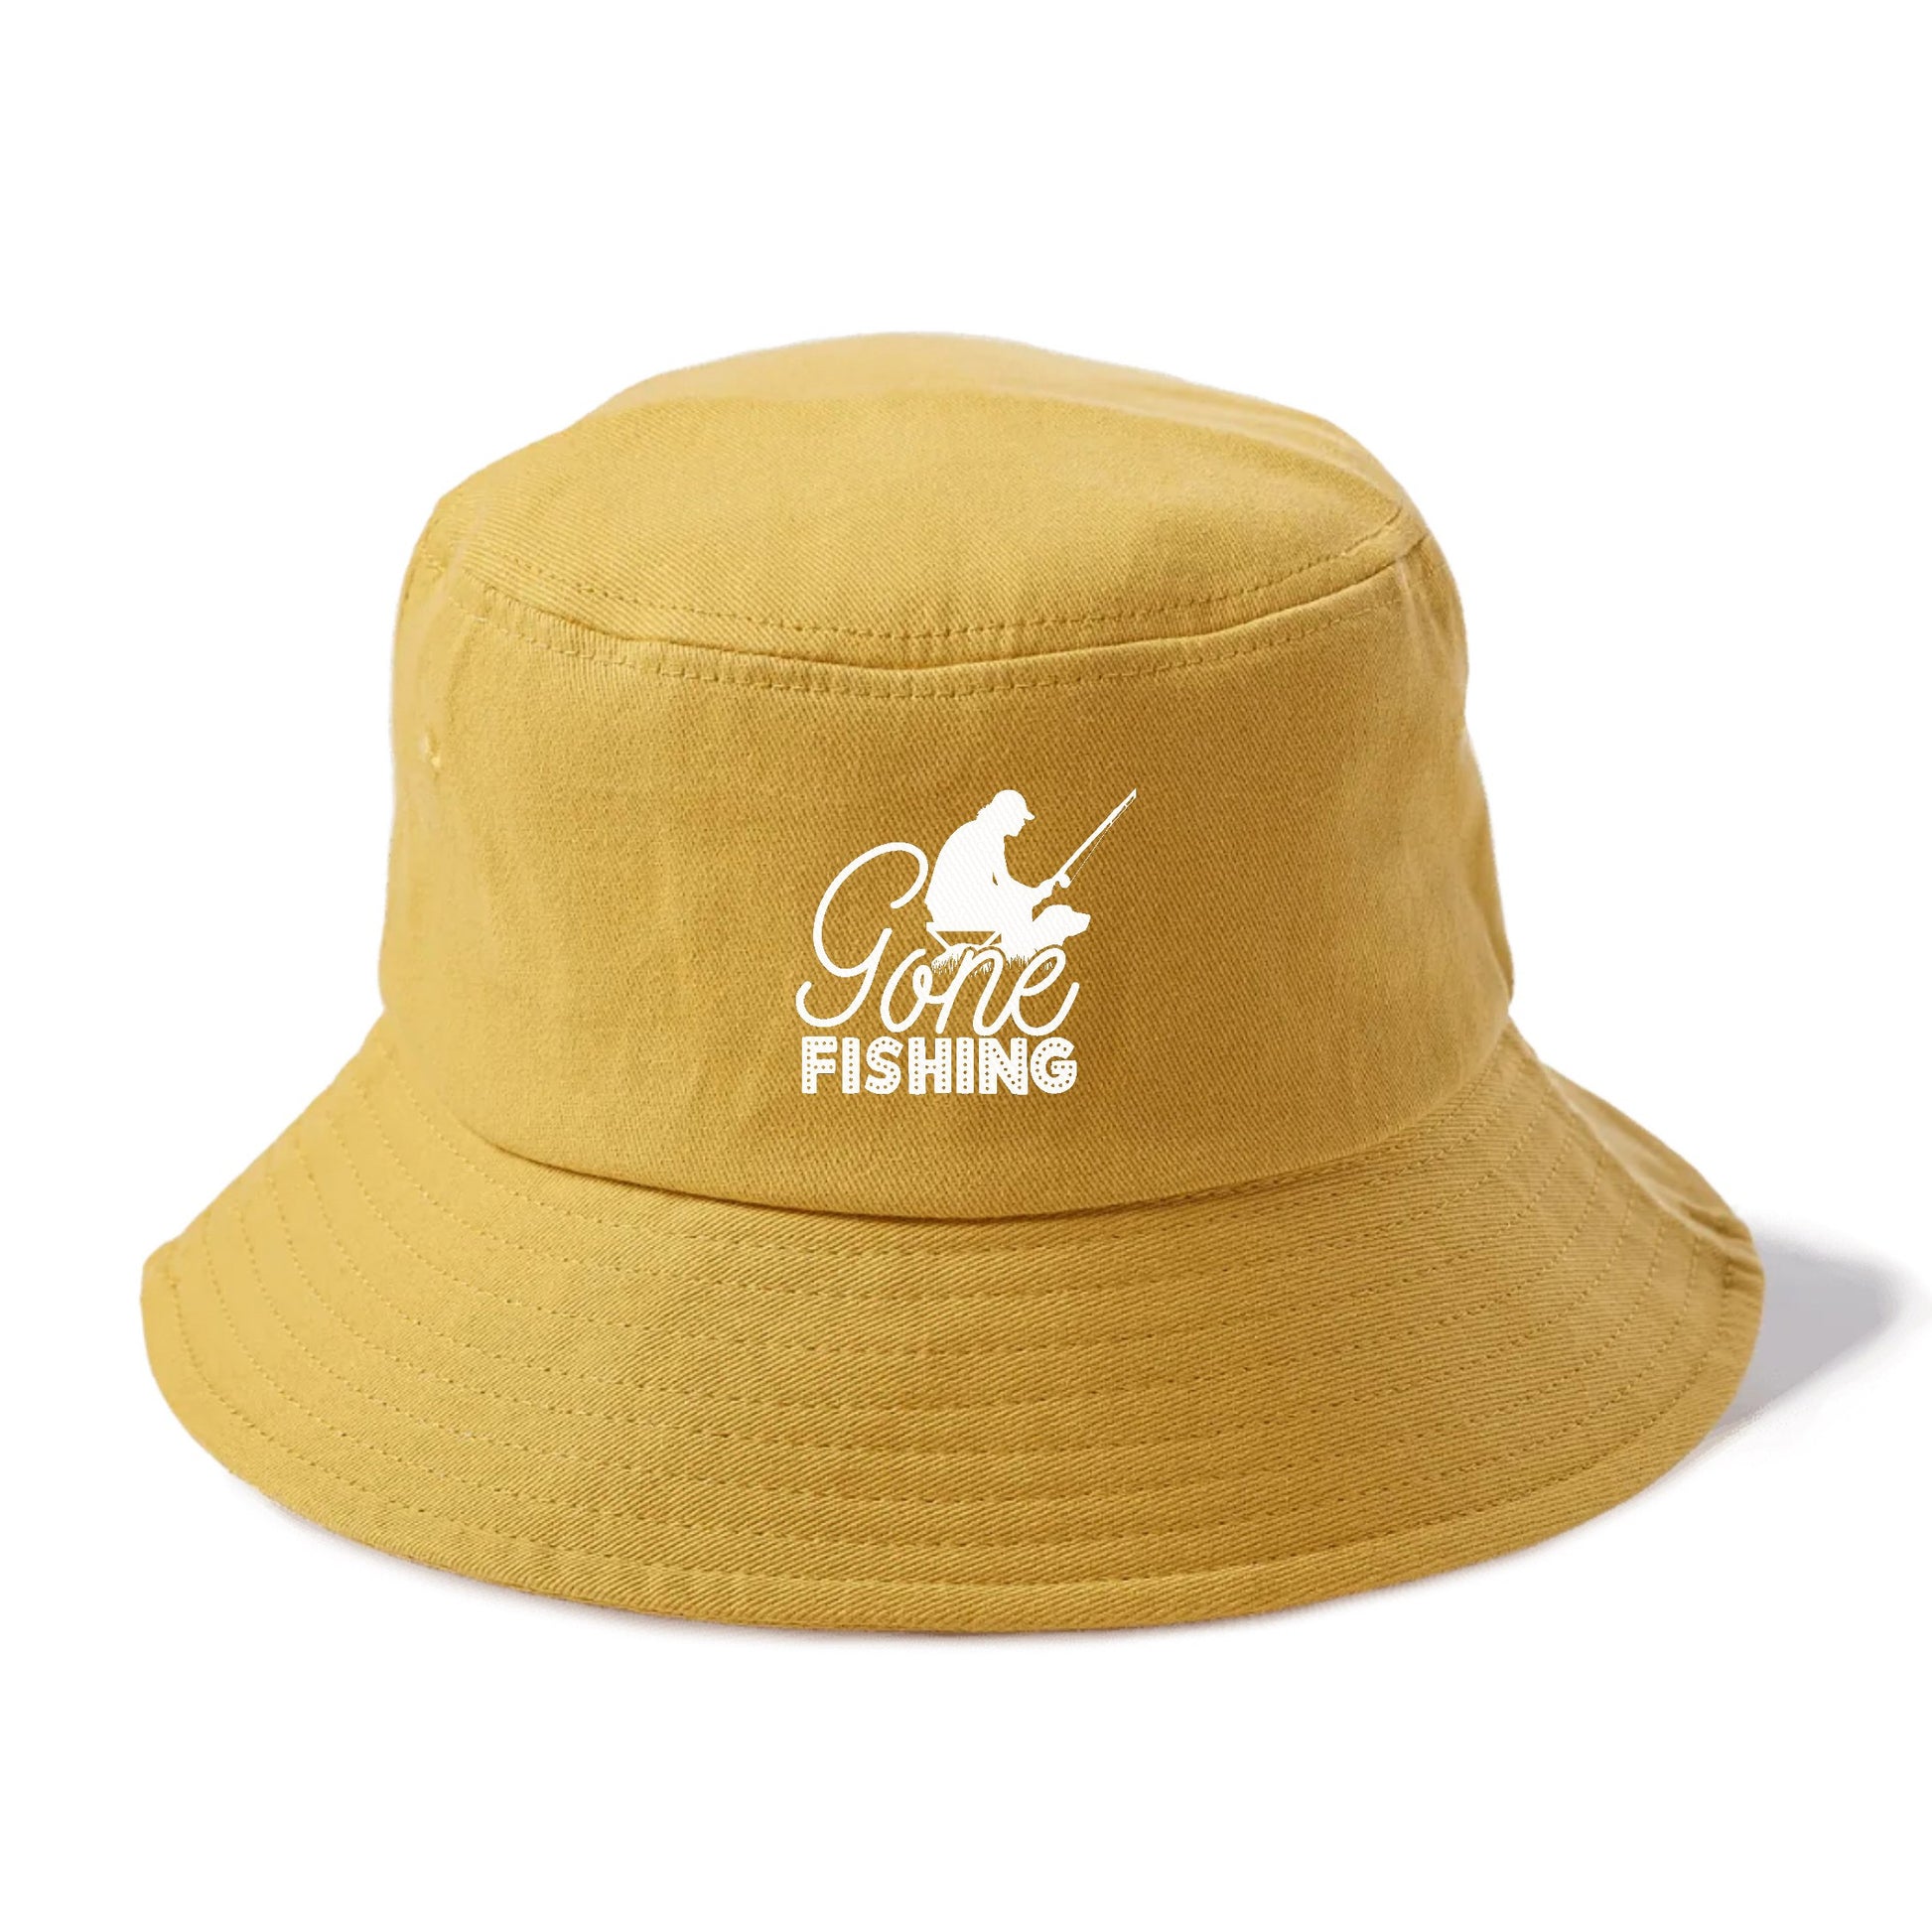 Gone Fishing Bucket Hat – Pandaize